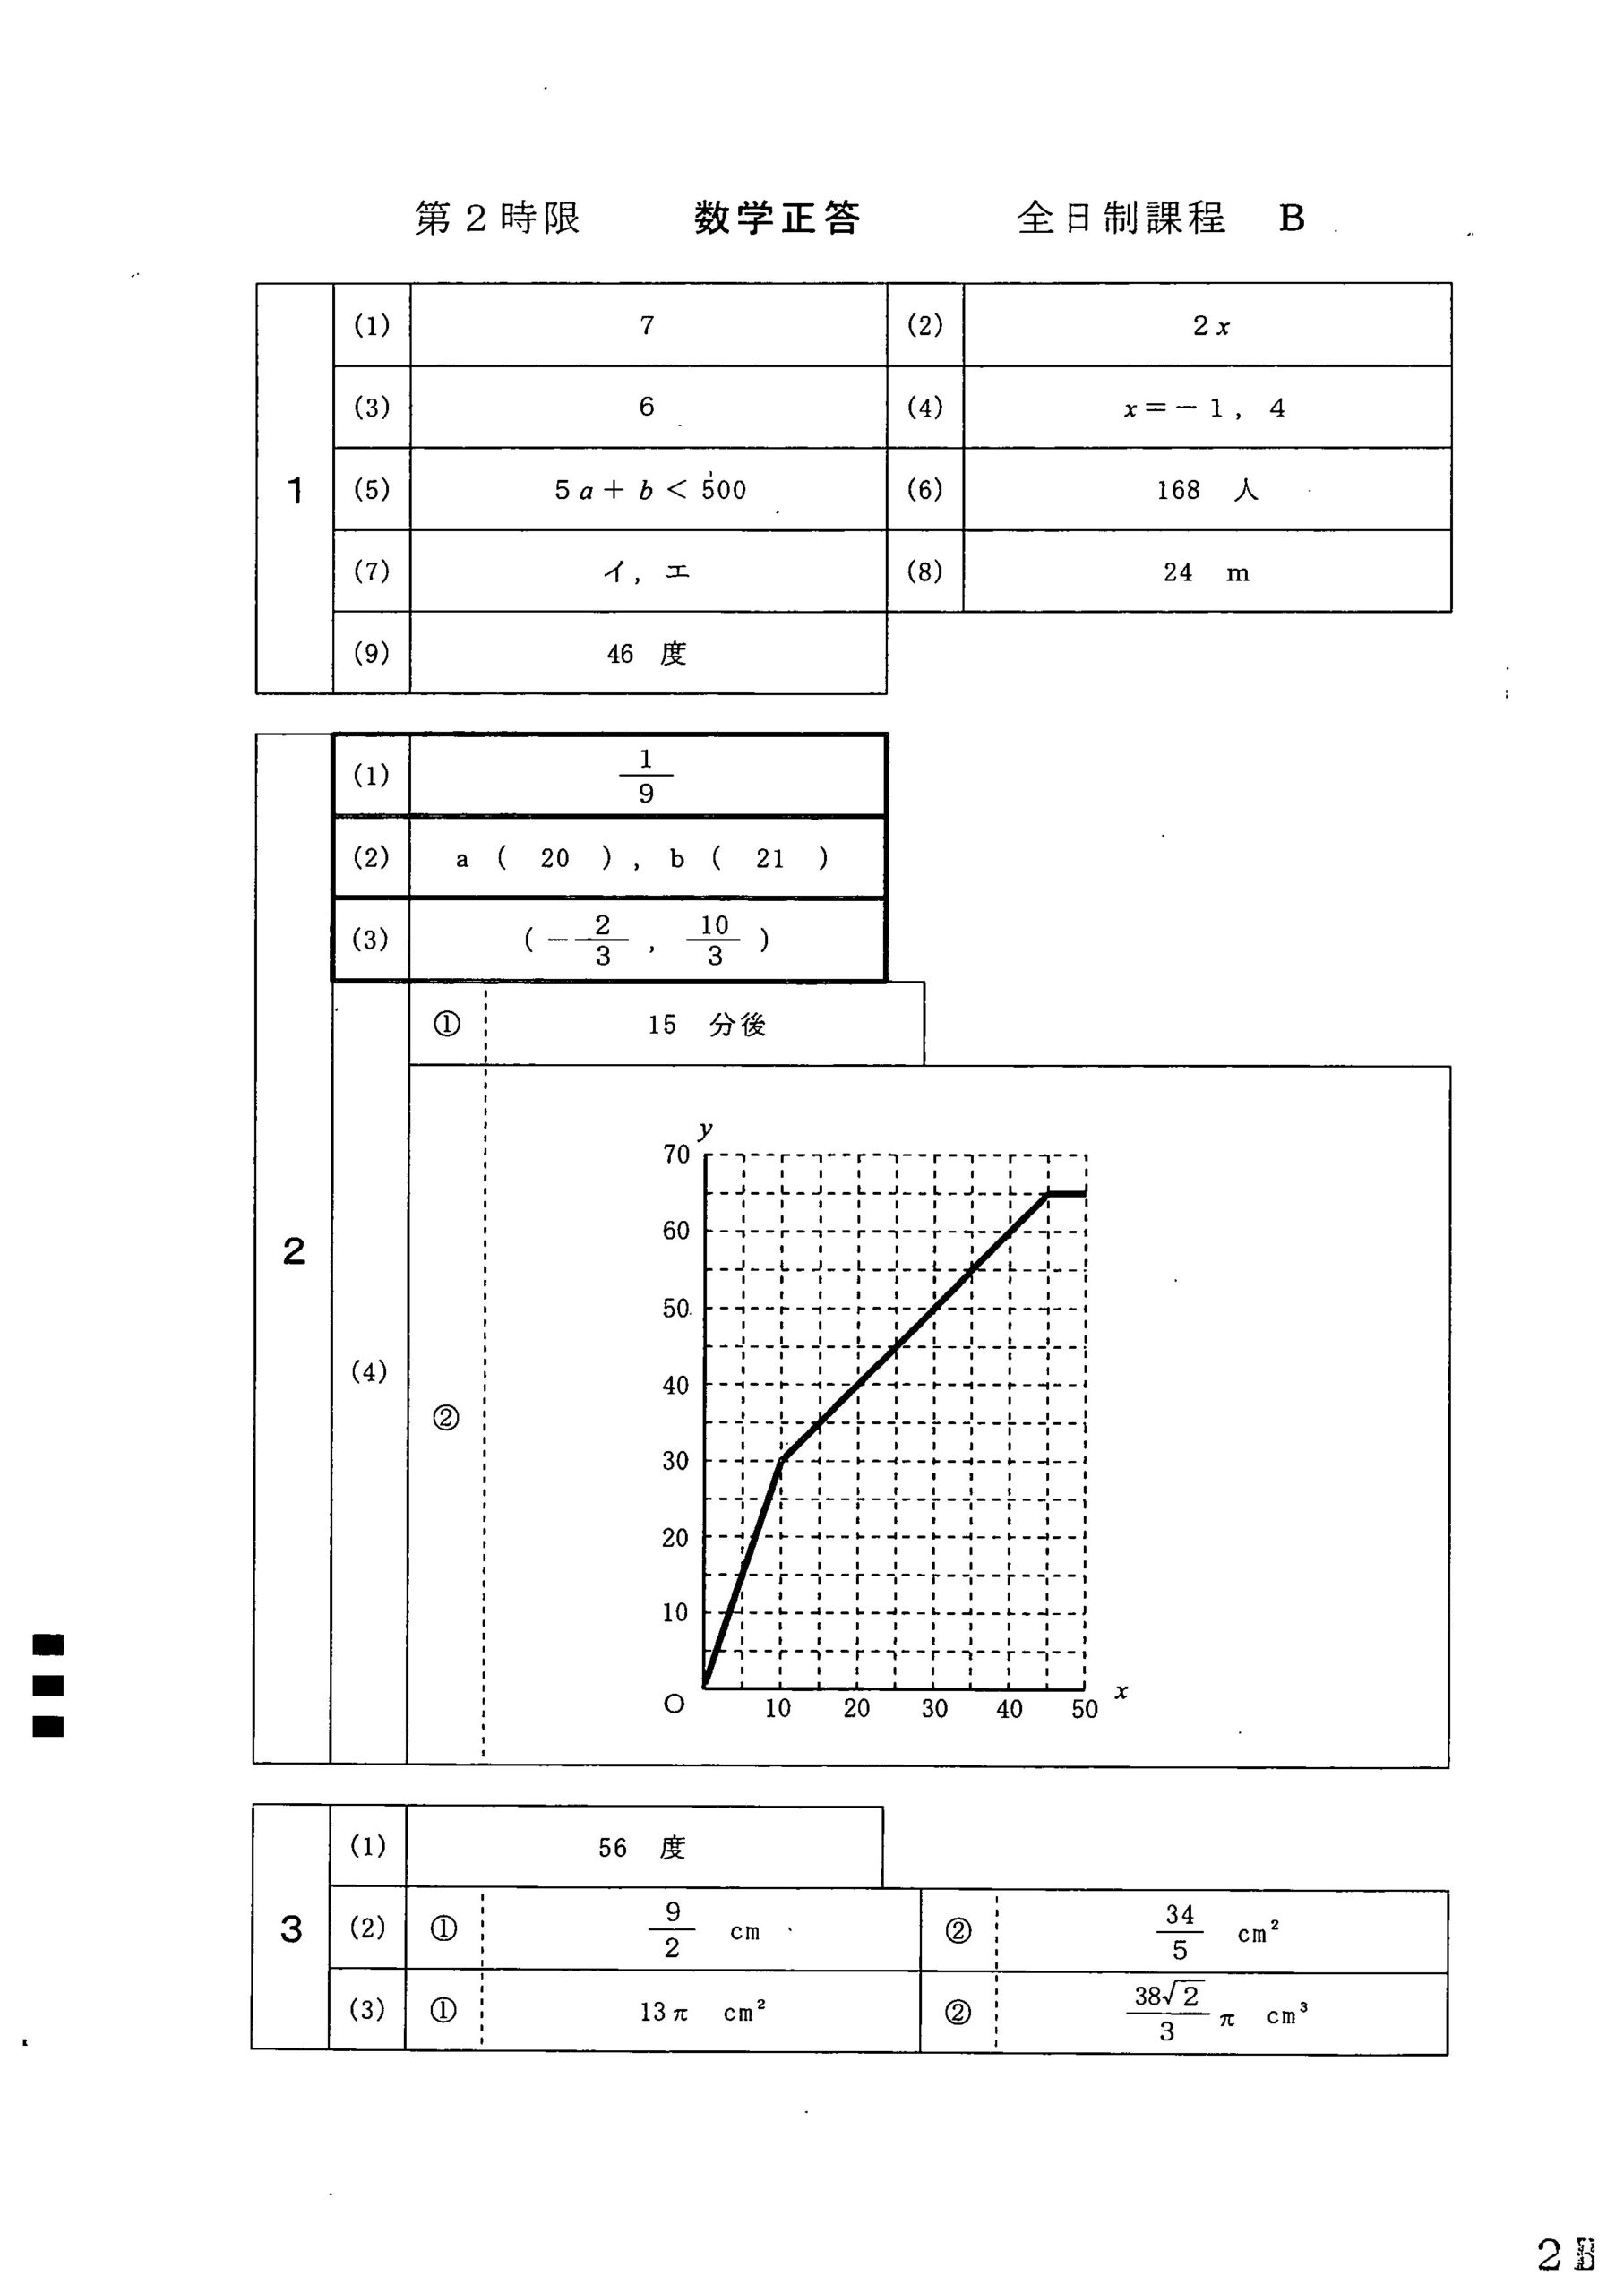 2020愛知県公立高校B数学_模範解答例